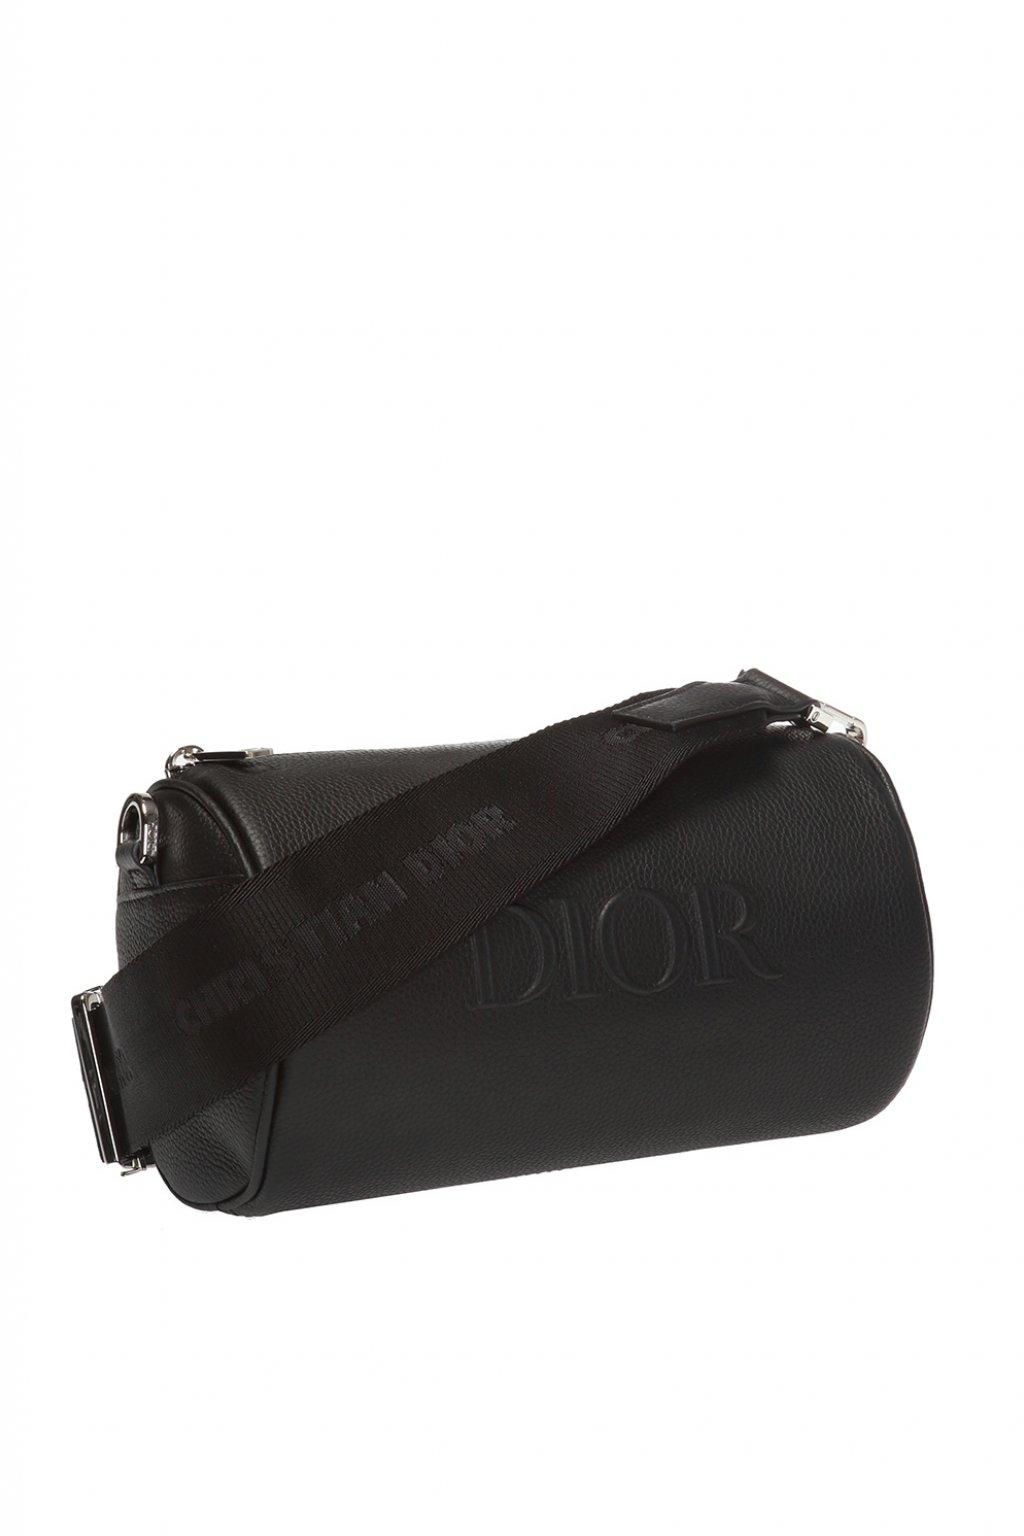 roller pouch dior